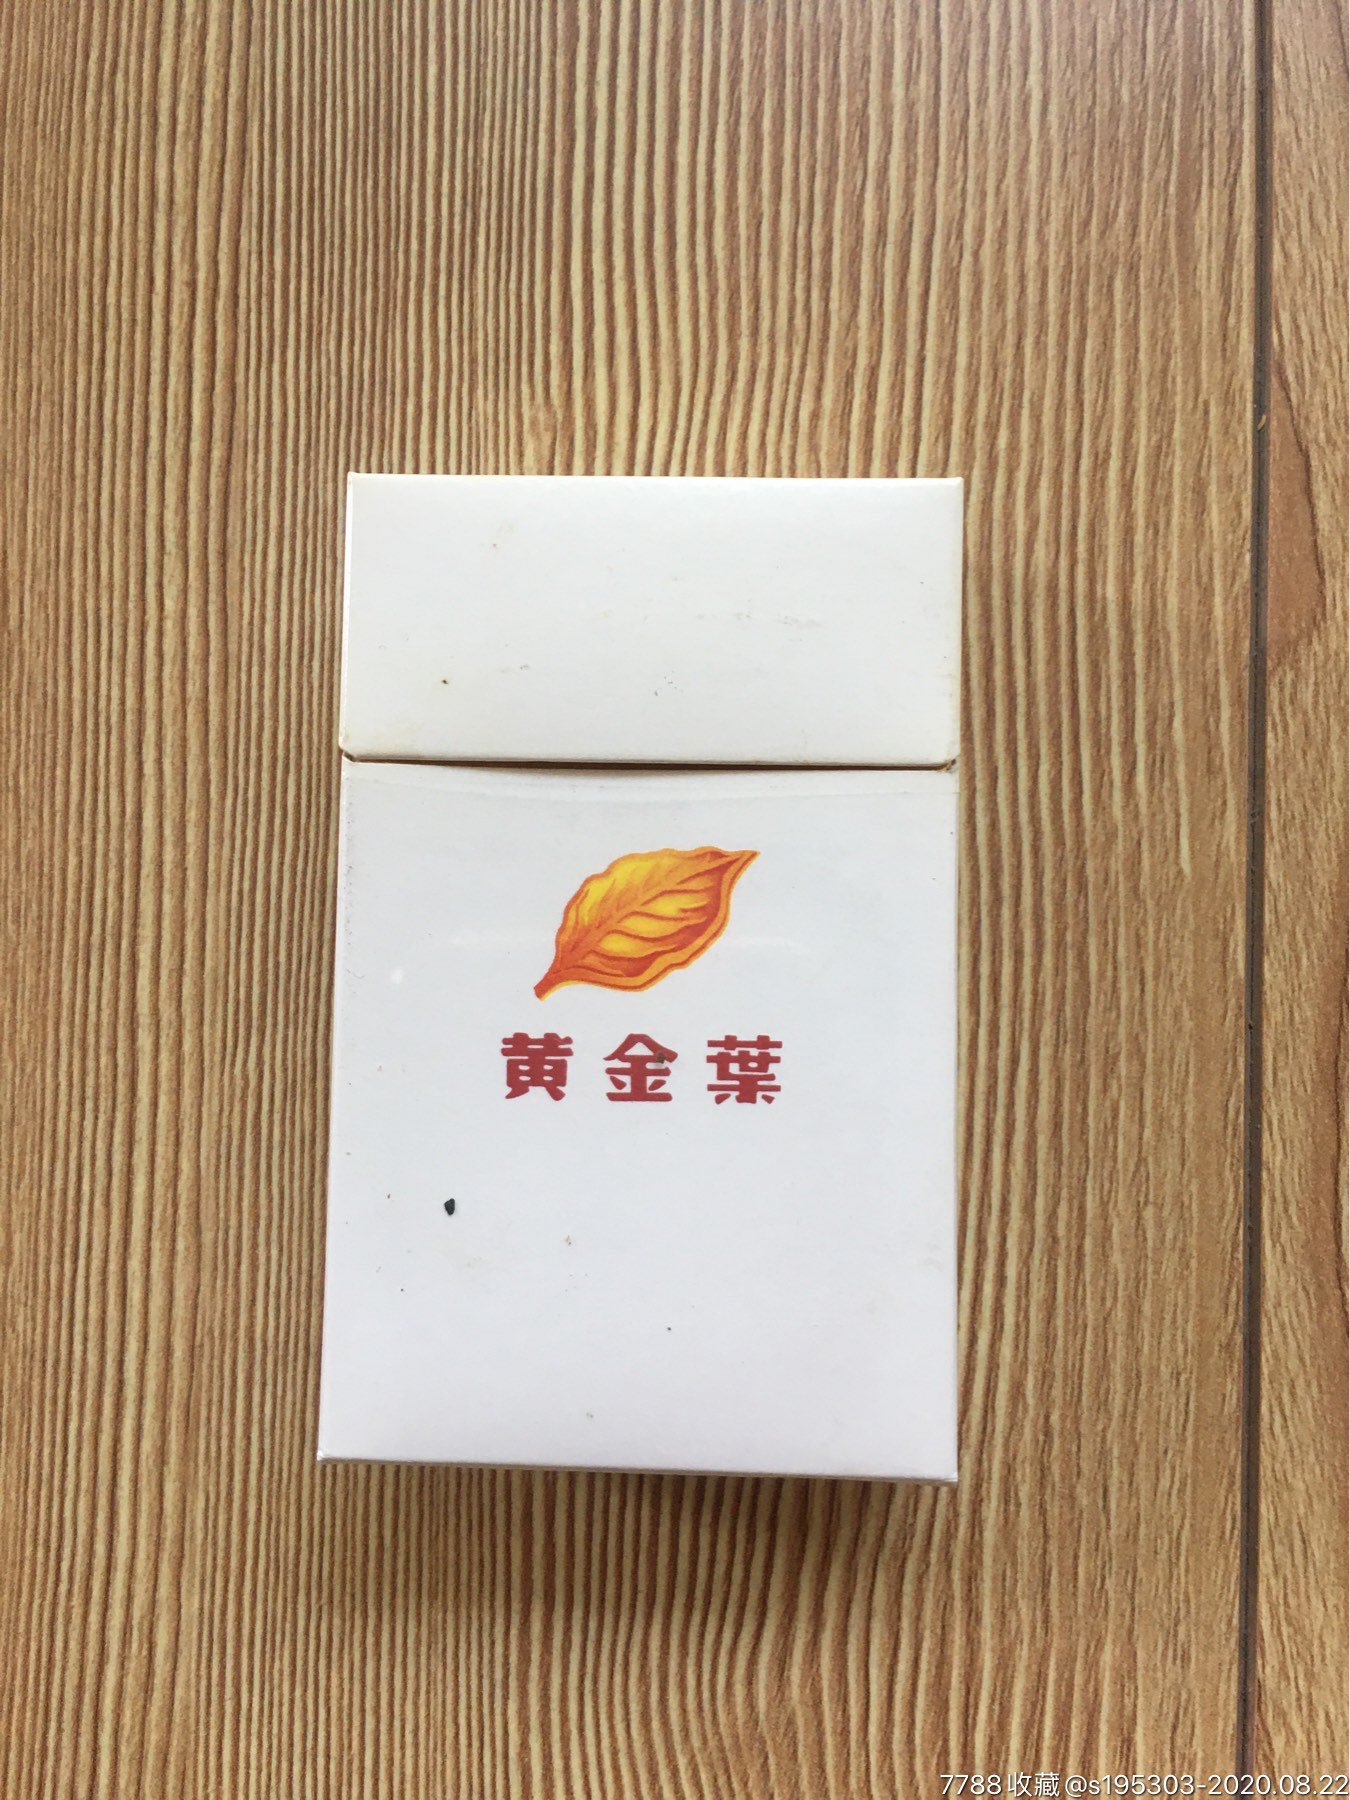 黄金叶～非卖品3d-价格:6元-se75014205-烟标/烟盒